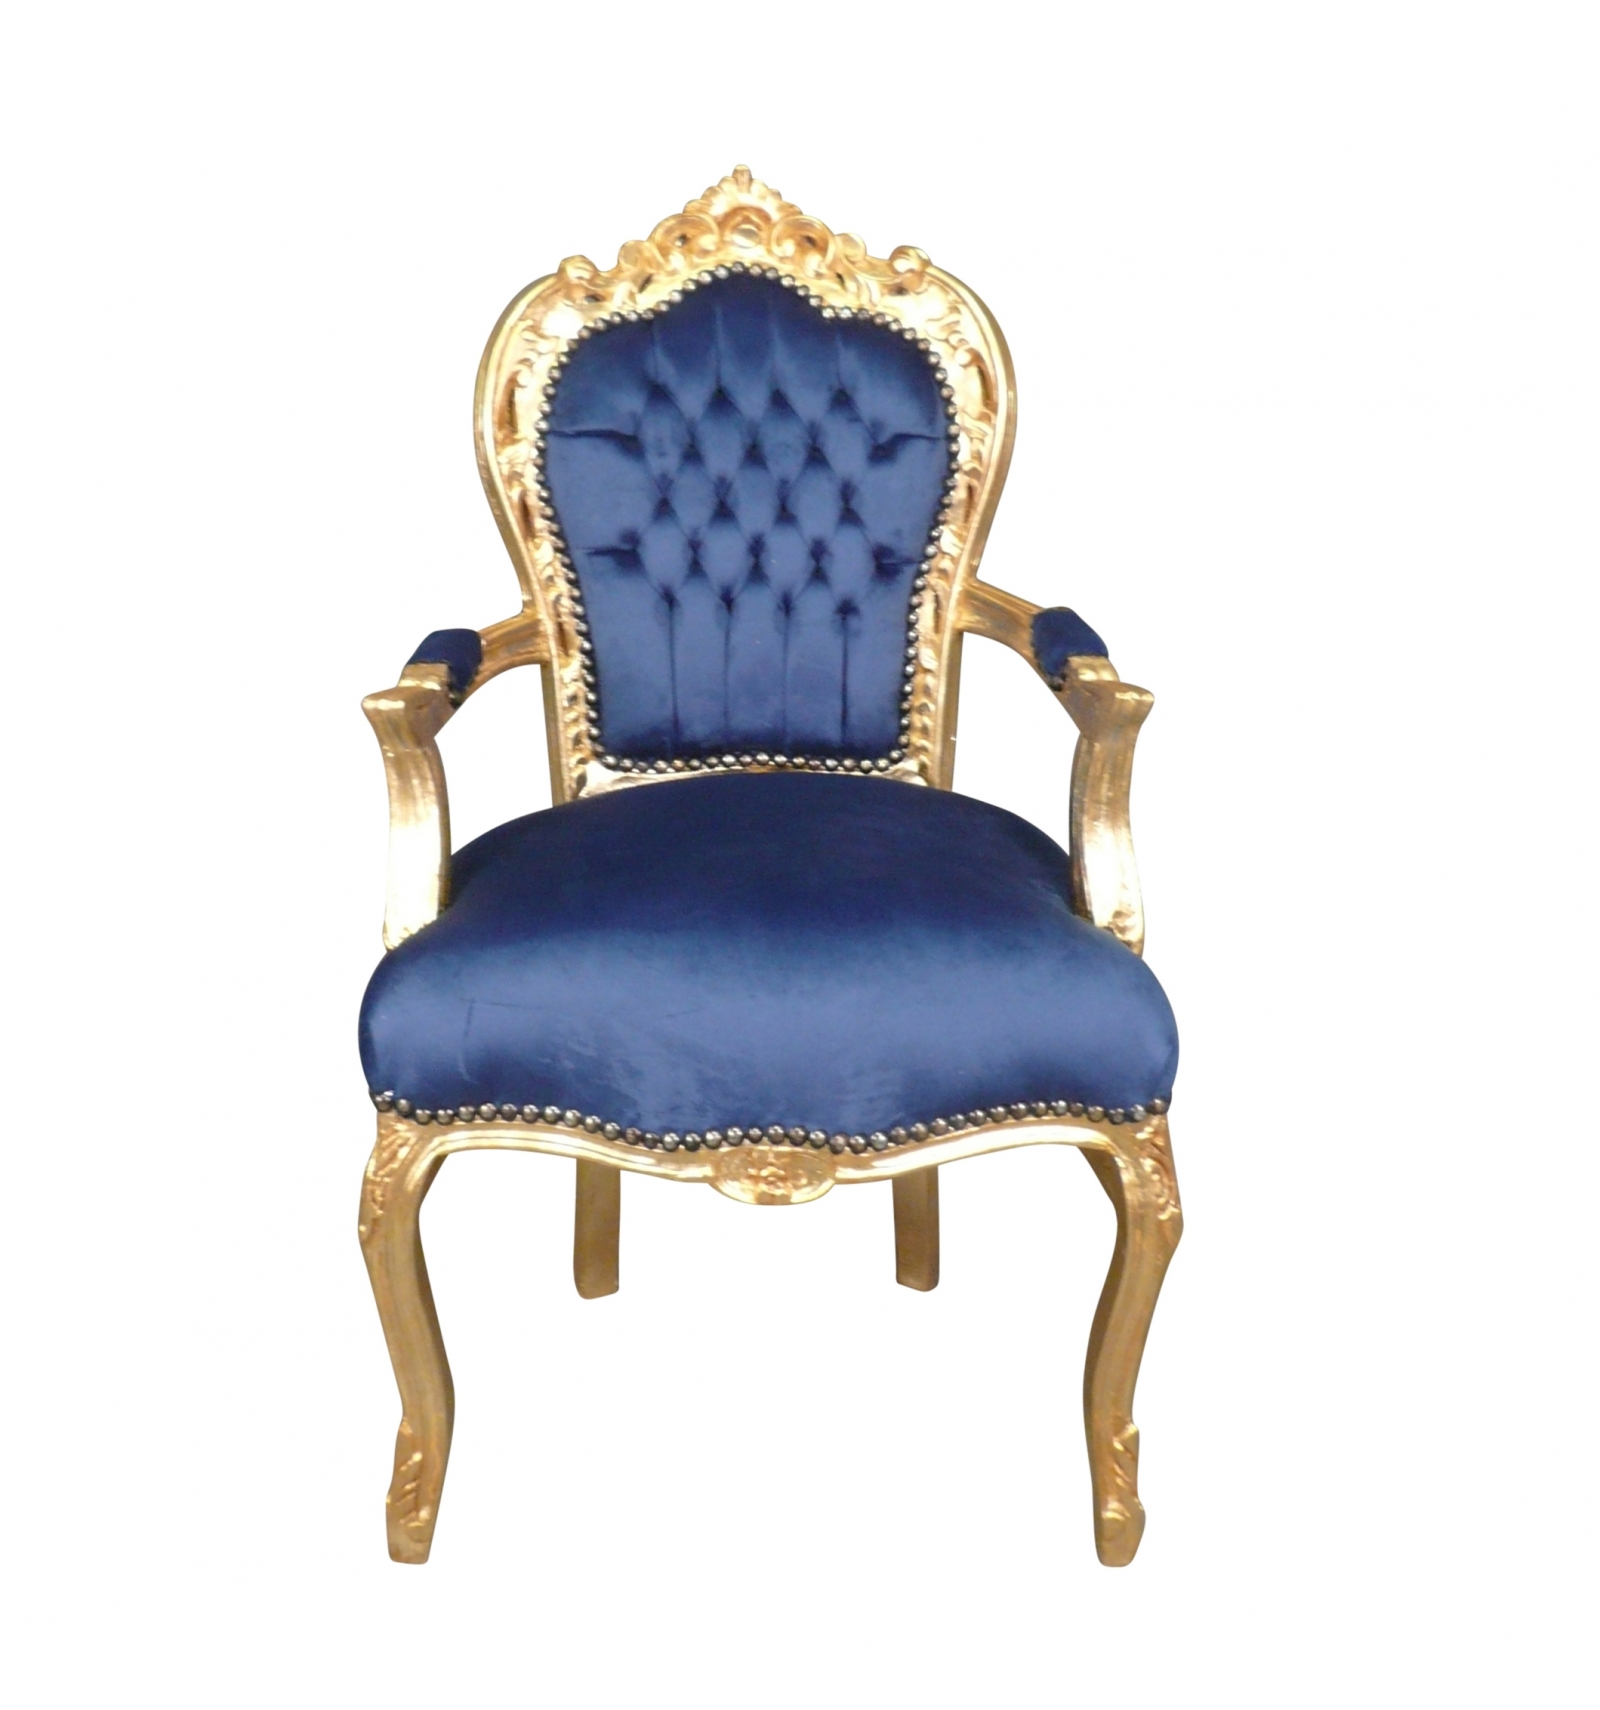 dennenboom Chemicus Lenen Barok fauteuil fluweel in blauw - Goedkope rococo meubelen